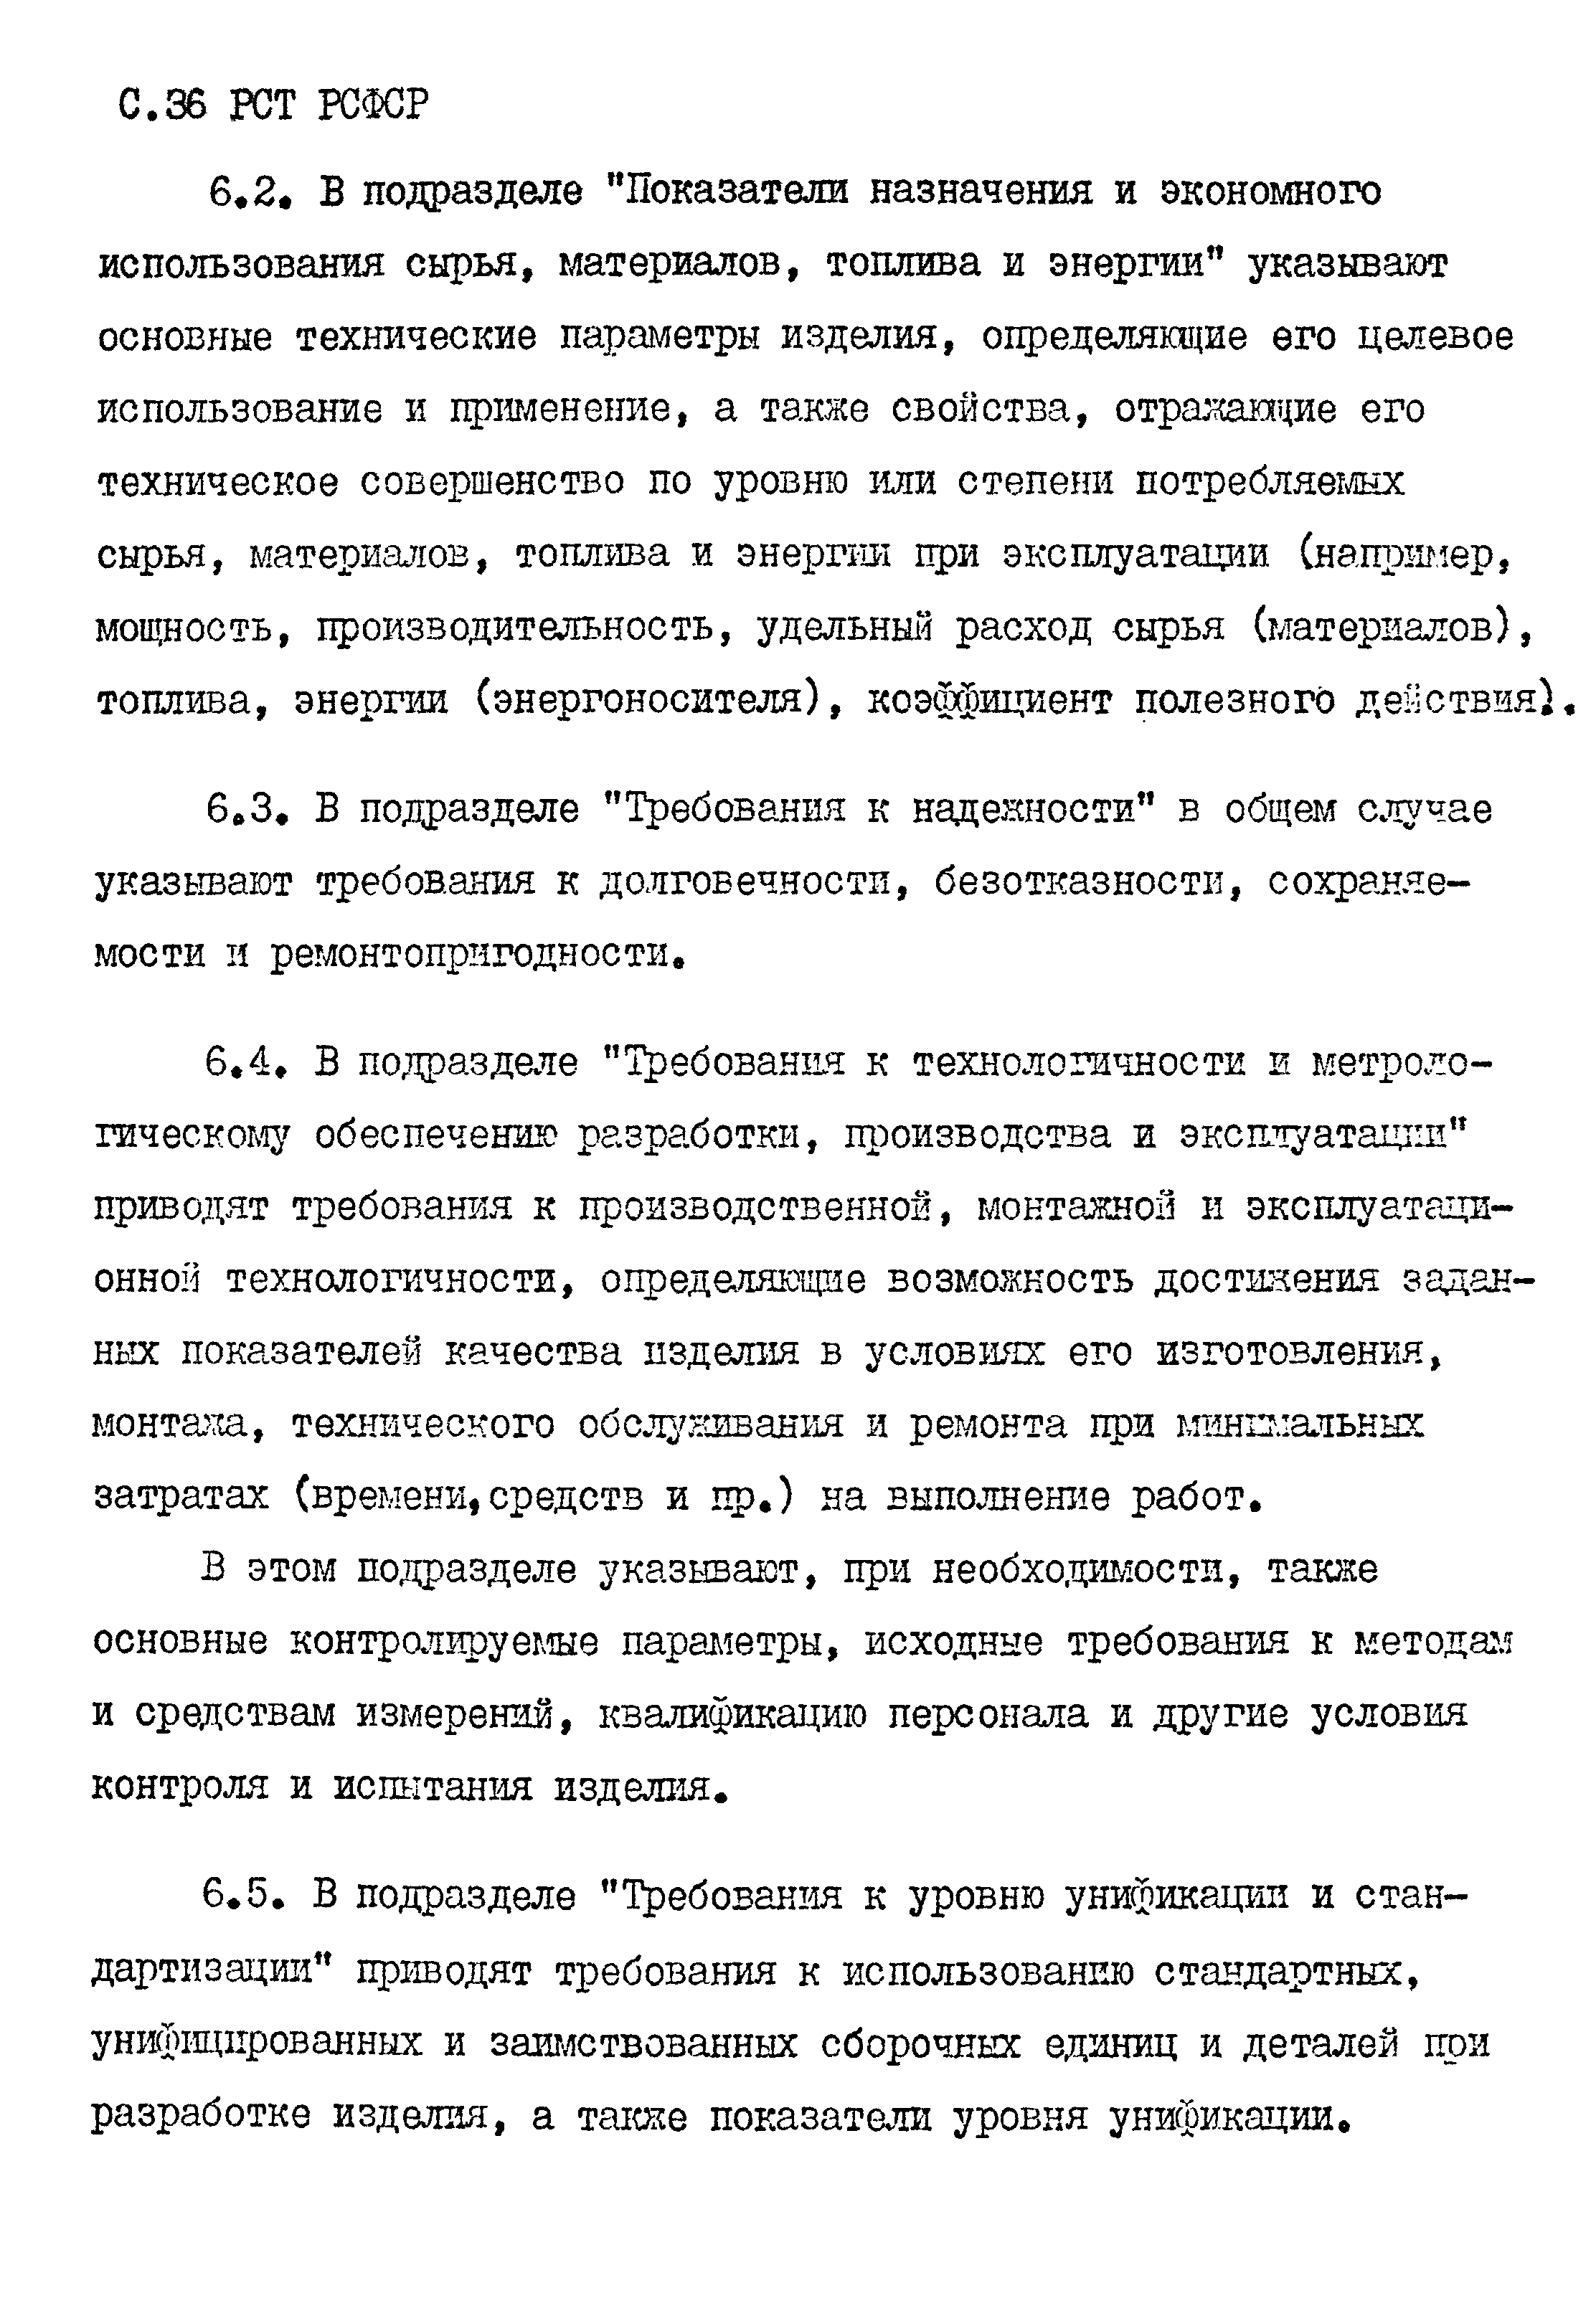 РСТ РСФСР 779-91